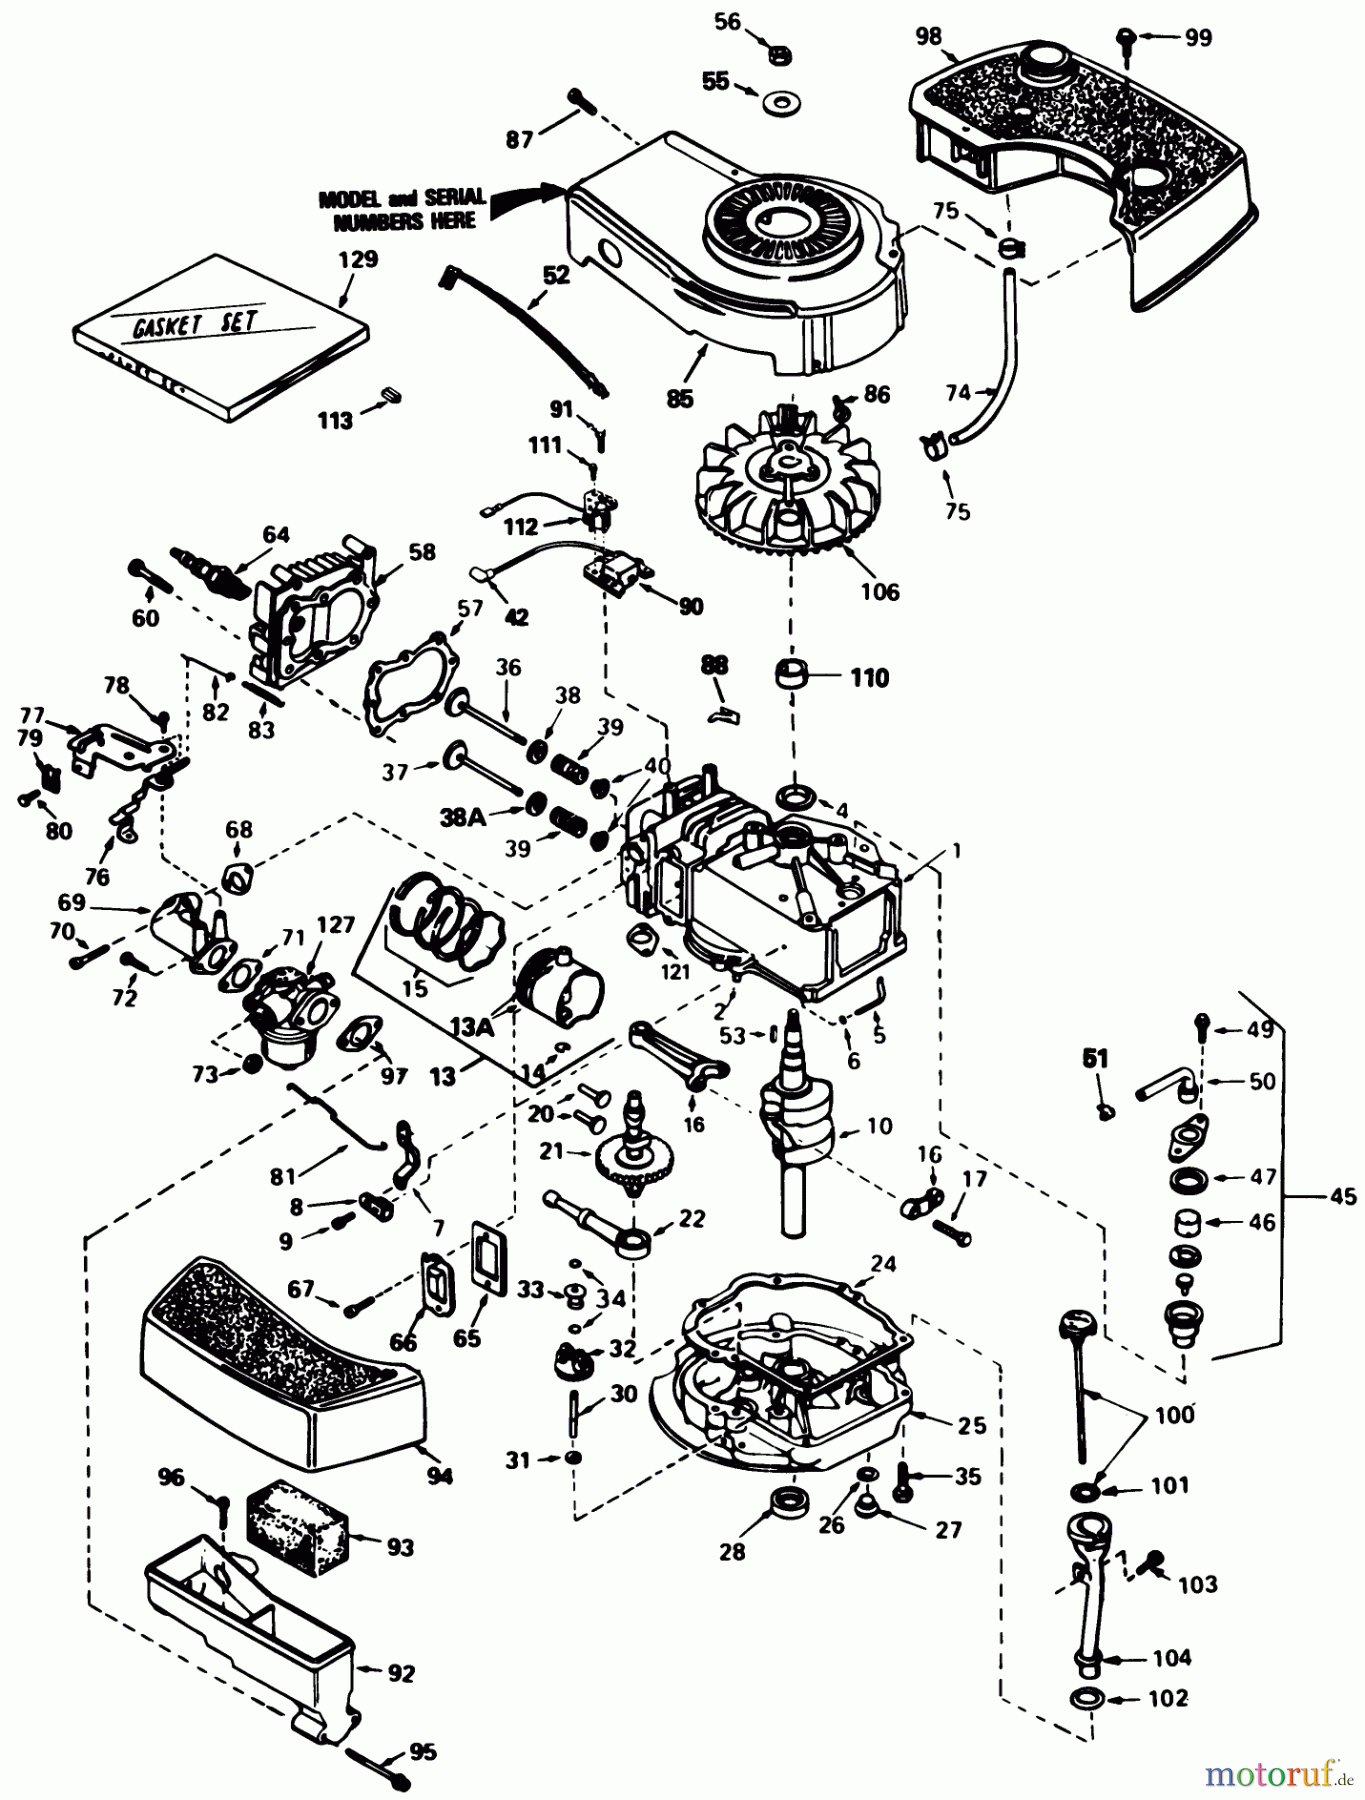  Toro Neu Mowers, Walk-Behind Seite 1 20574 - Toro Lawnmower, 1986 (6000001-6999999) ENGINE TECUMSEH MODEL NO. TNT 100 10097E